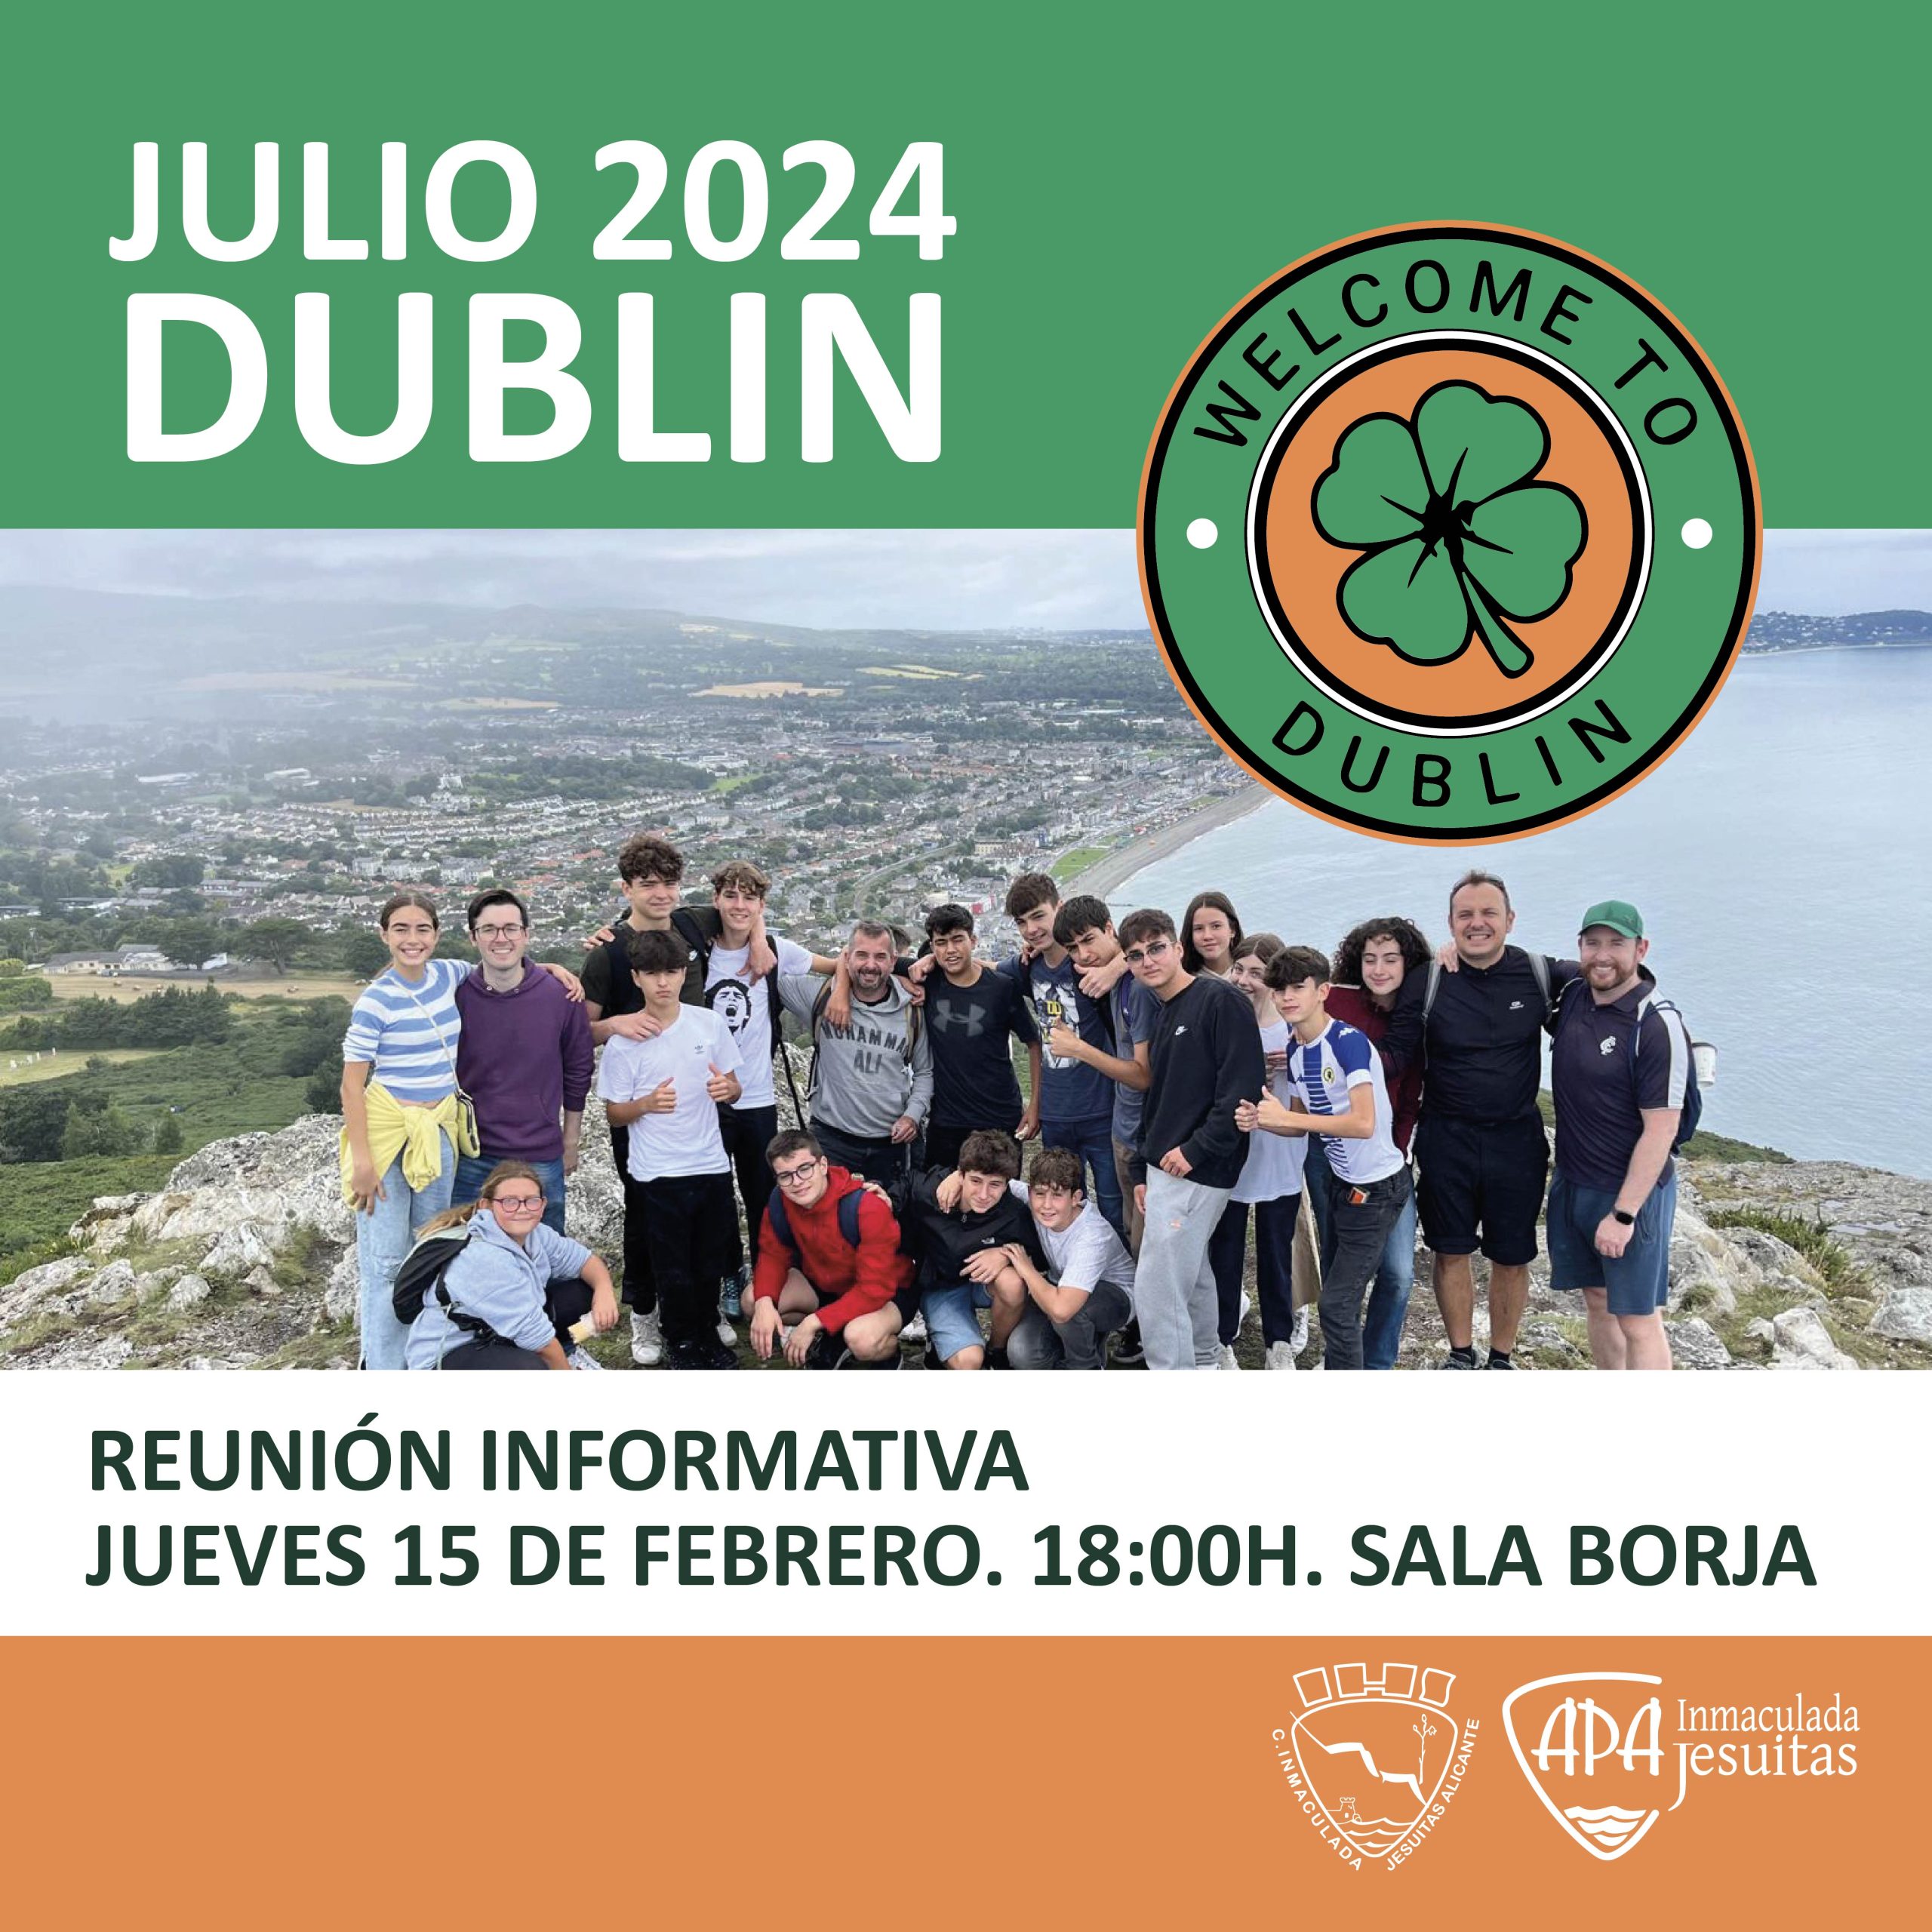 DUBLIN 2024. Reunión informativa